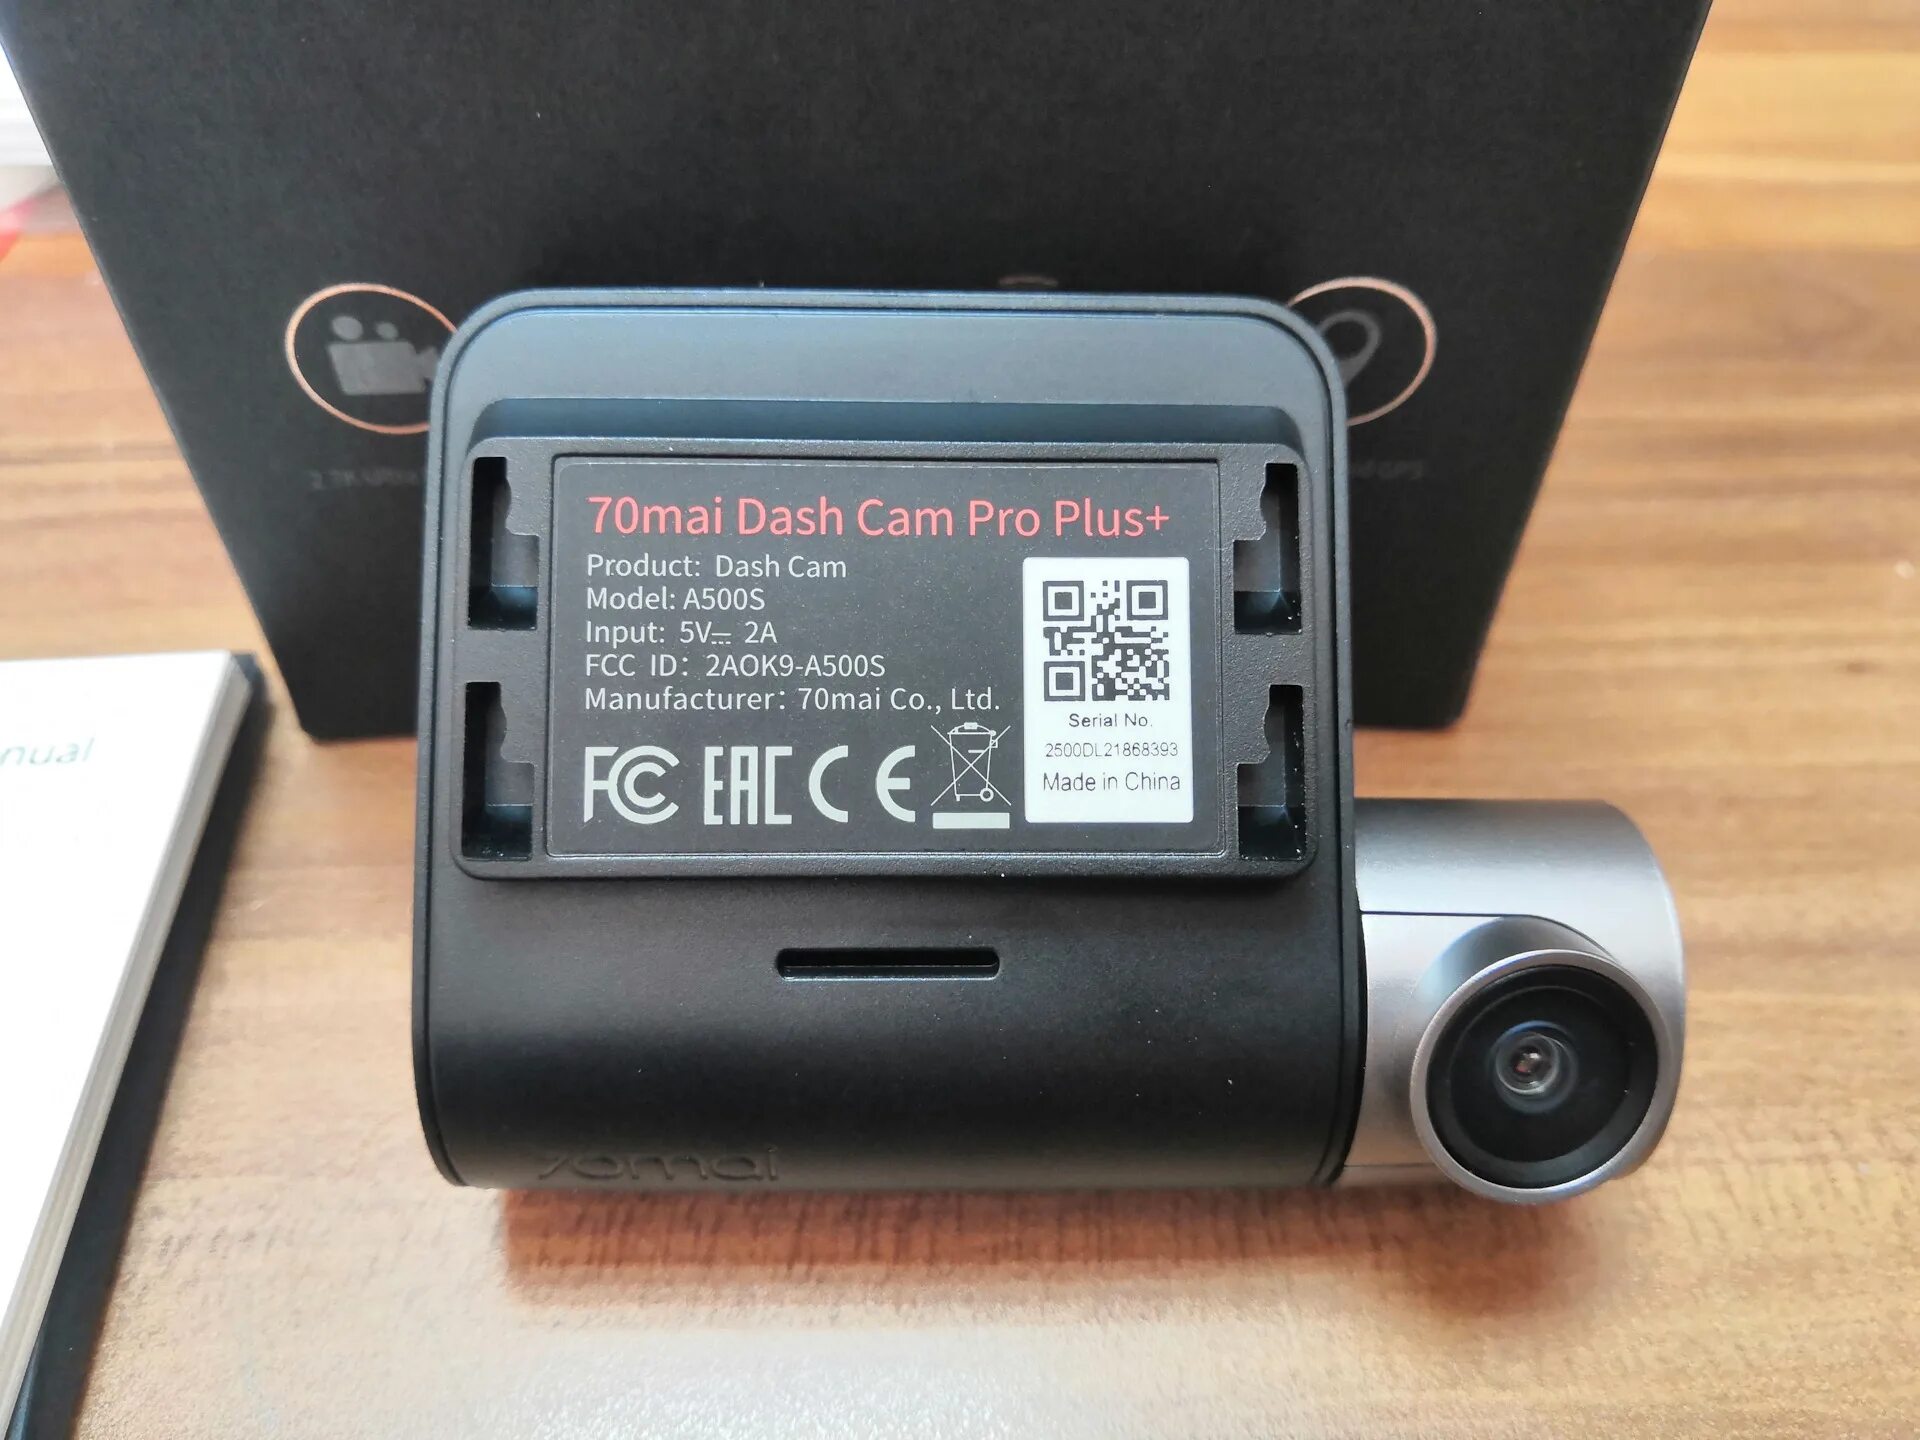 Видеорегистратор 70mai Dash cam Pro Plus+. Видеорегистратор 70mai Dash cam Pro Plus a500s. Регистратор 70 mai Dash cam Pro Plus. Видеорегистратор 70mai Dash cam Pro Plus+ a500s, GPS, ГЛОНАСС, черный.